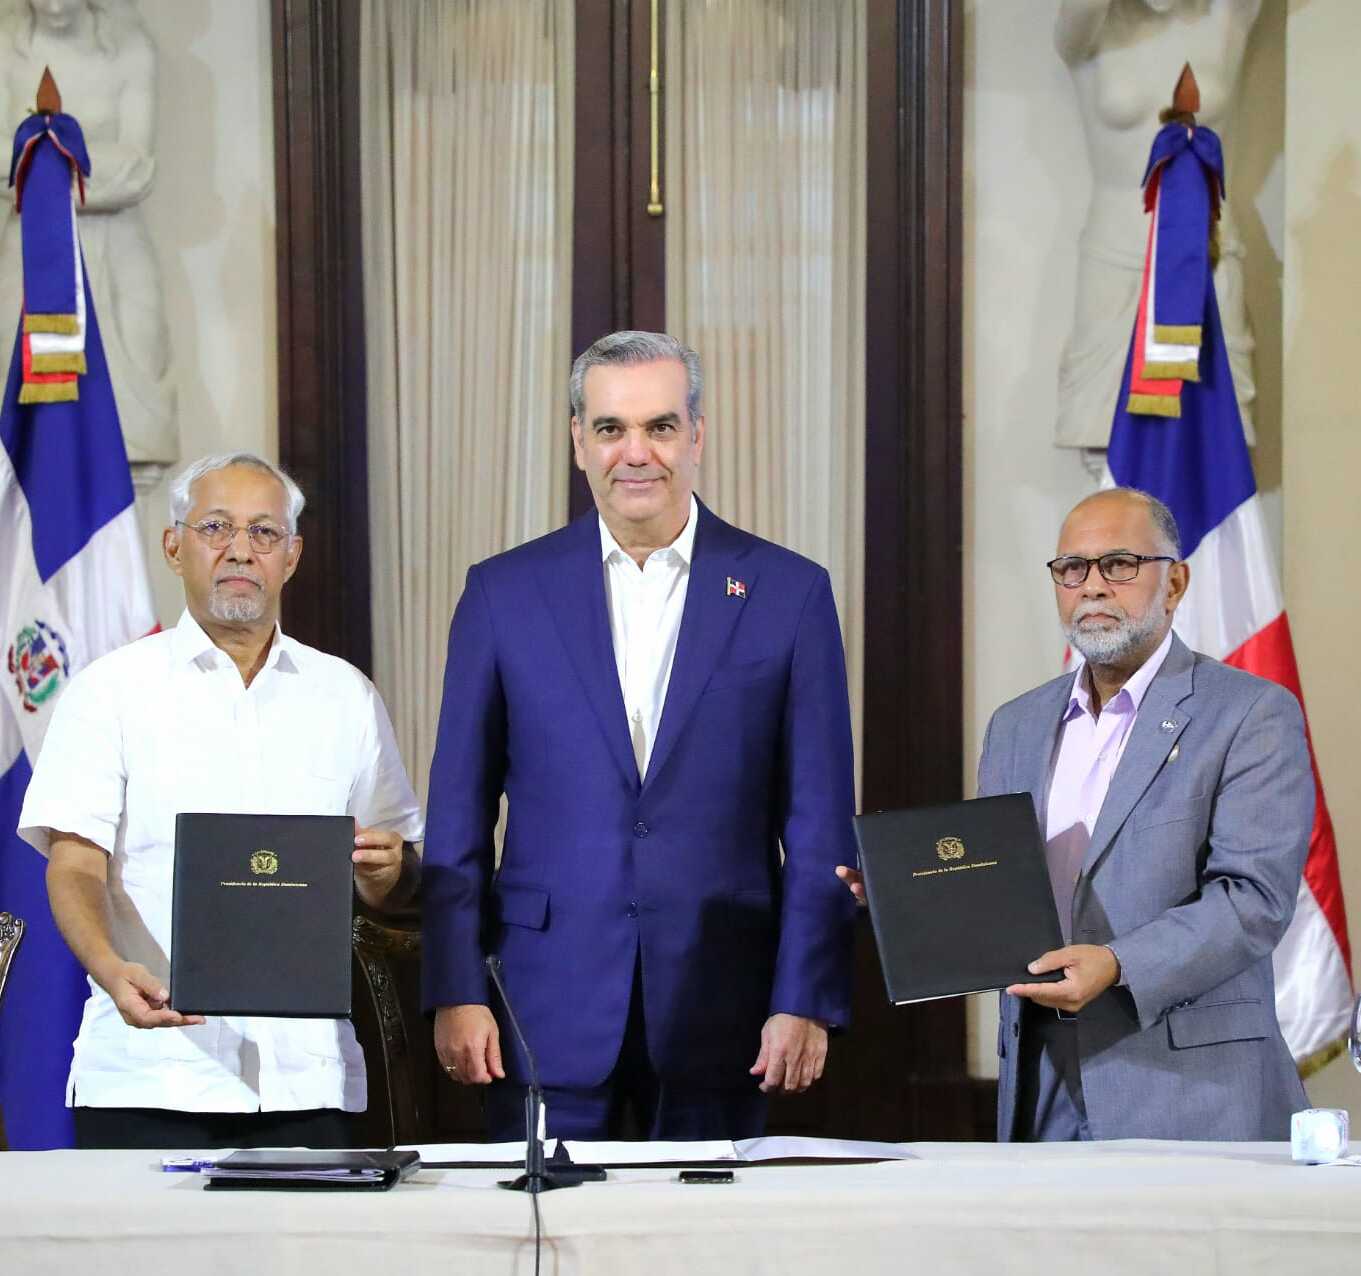 REPÚBLICA DOMINICANA: Presidente Abinader encabeza acuerdo histórico entre MINERD y ADP que persigue mejorar calidad educación dominicana